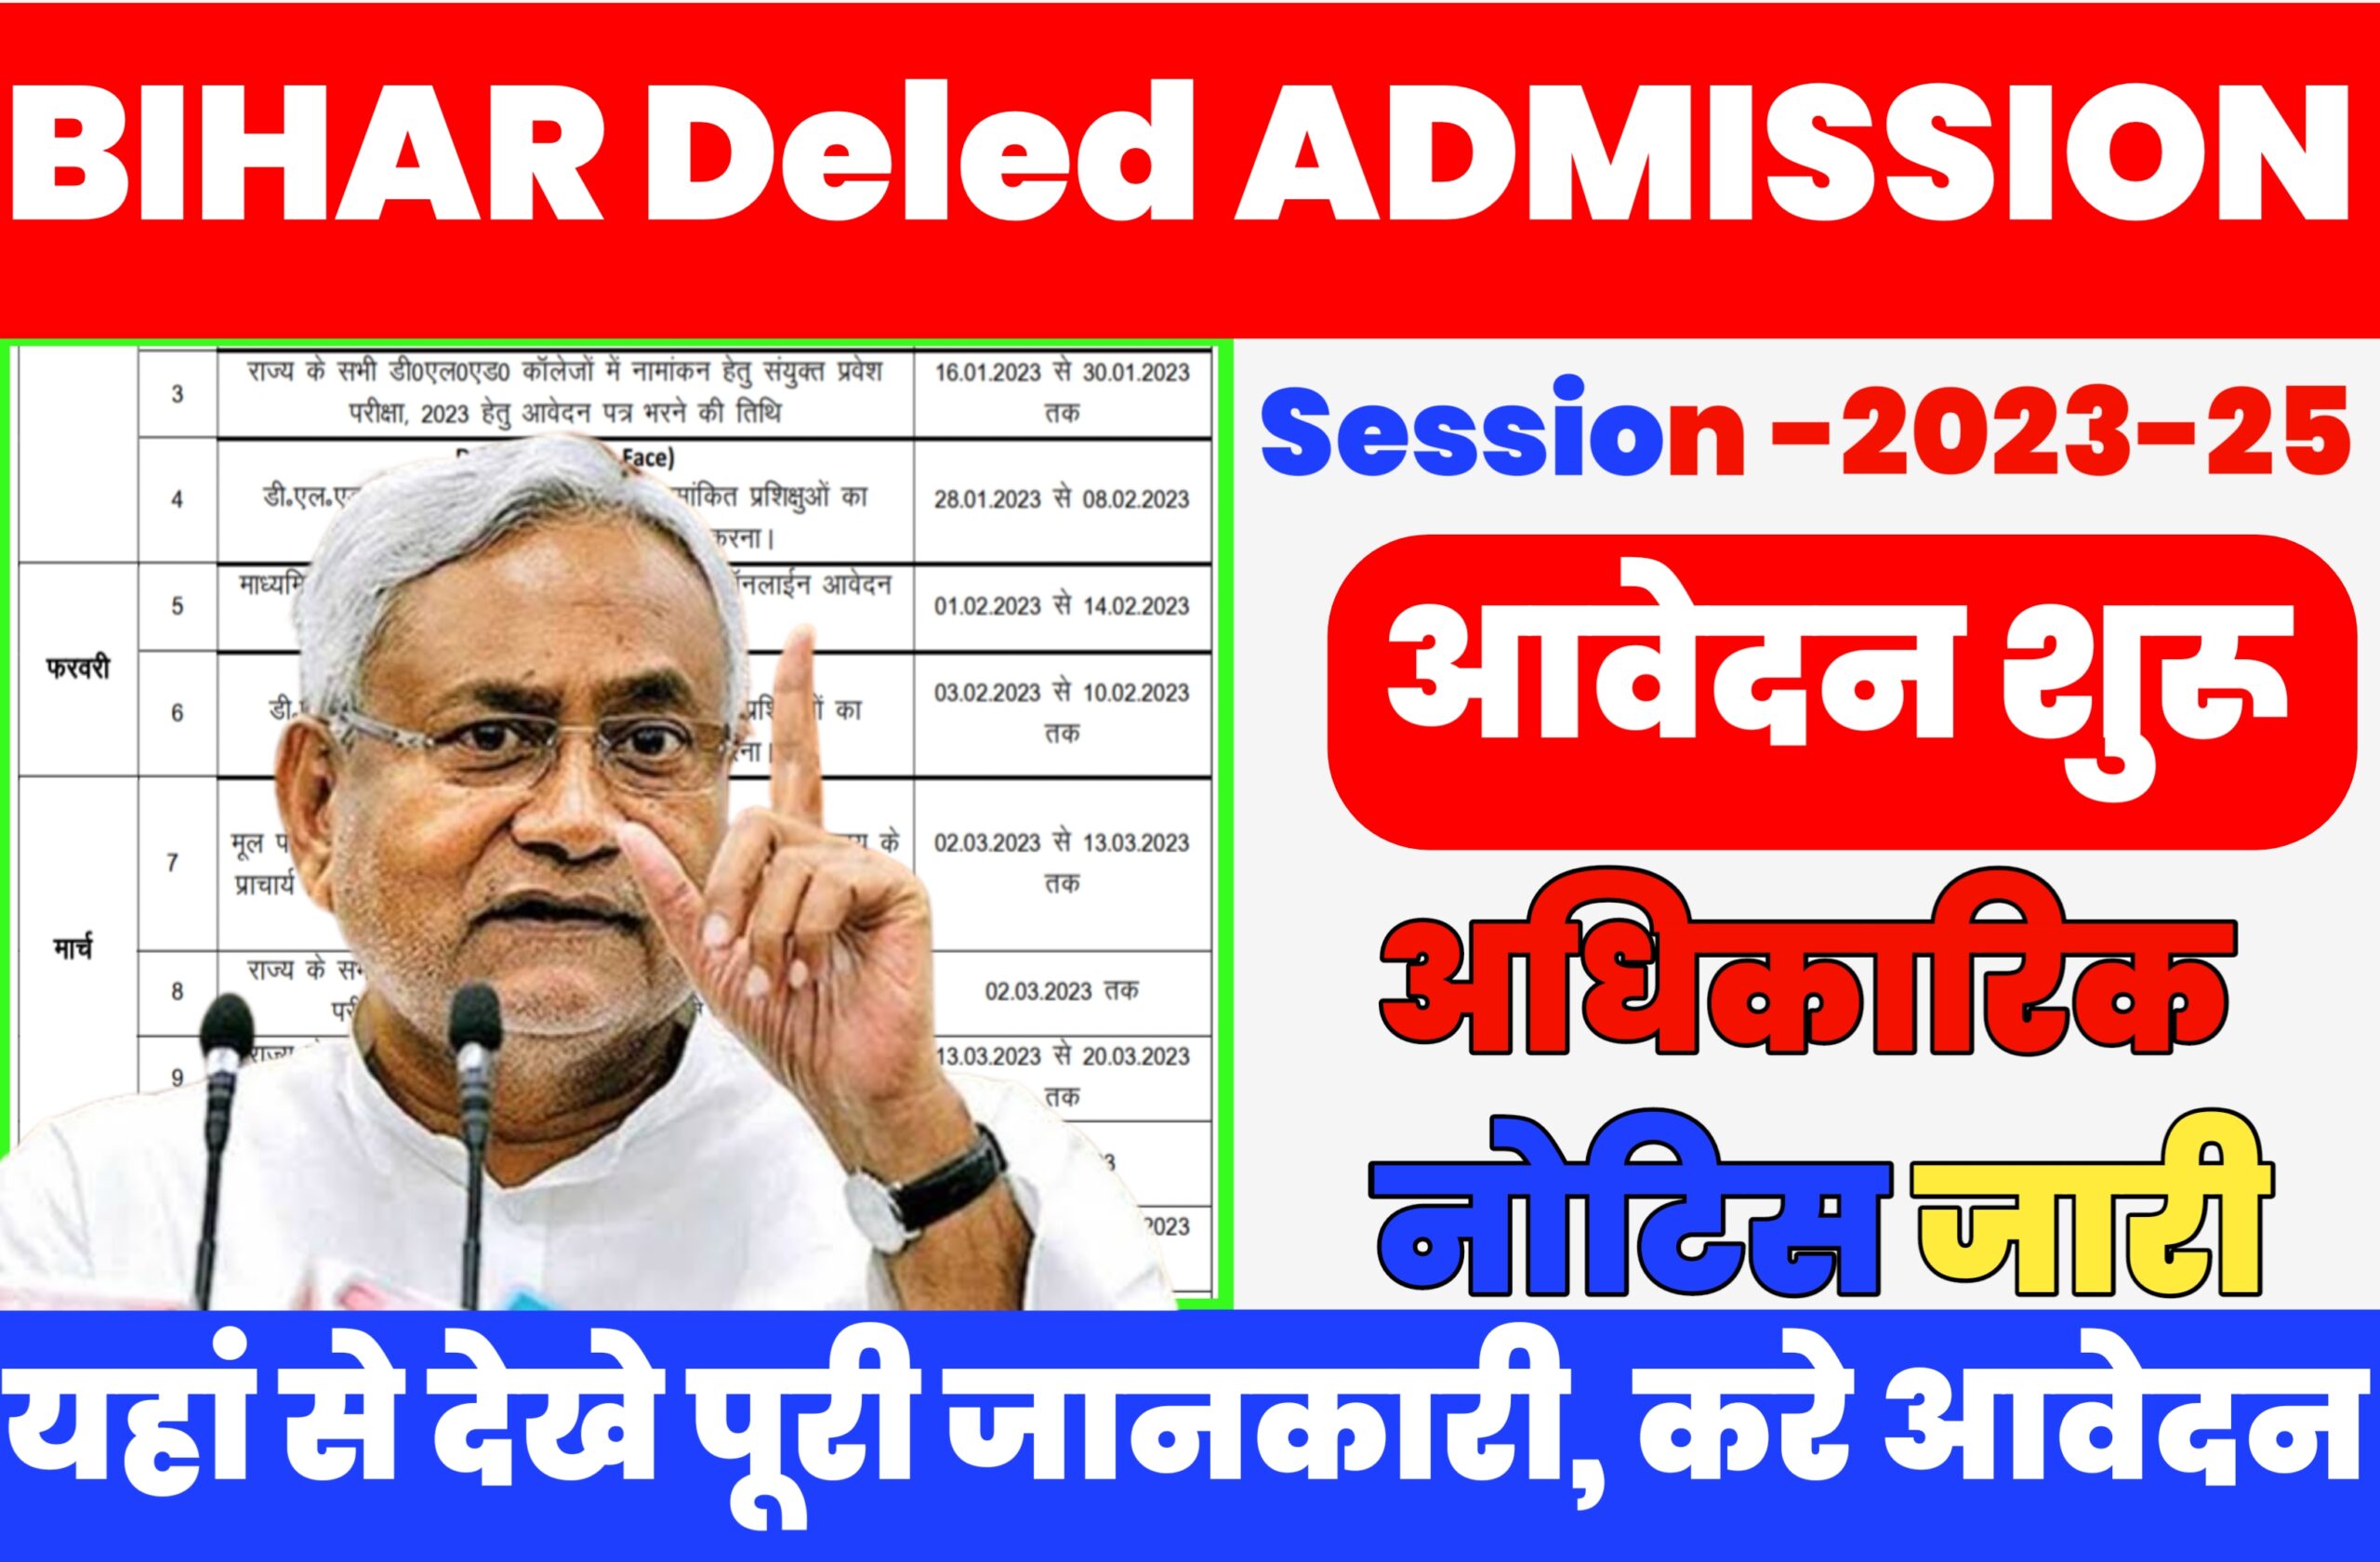 Bihar Deled Admission 2023 